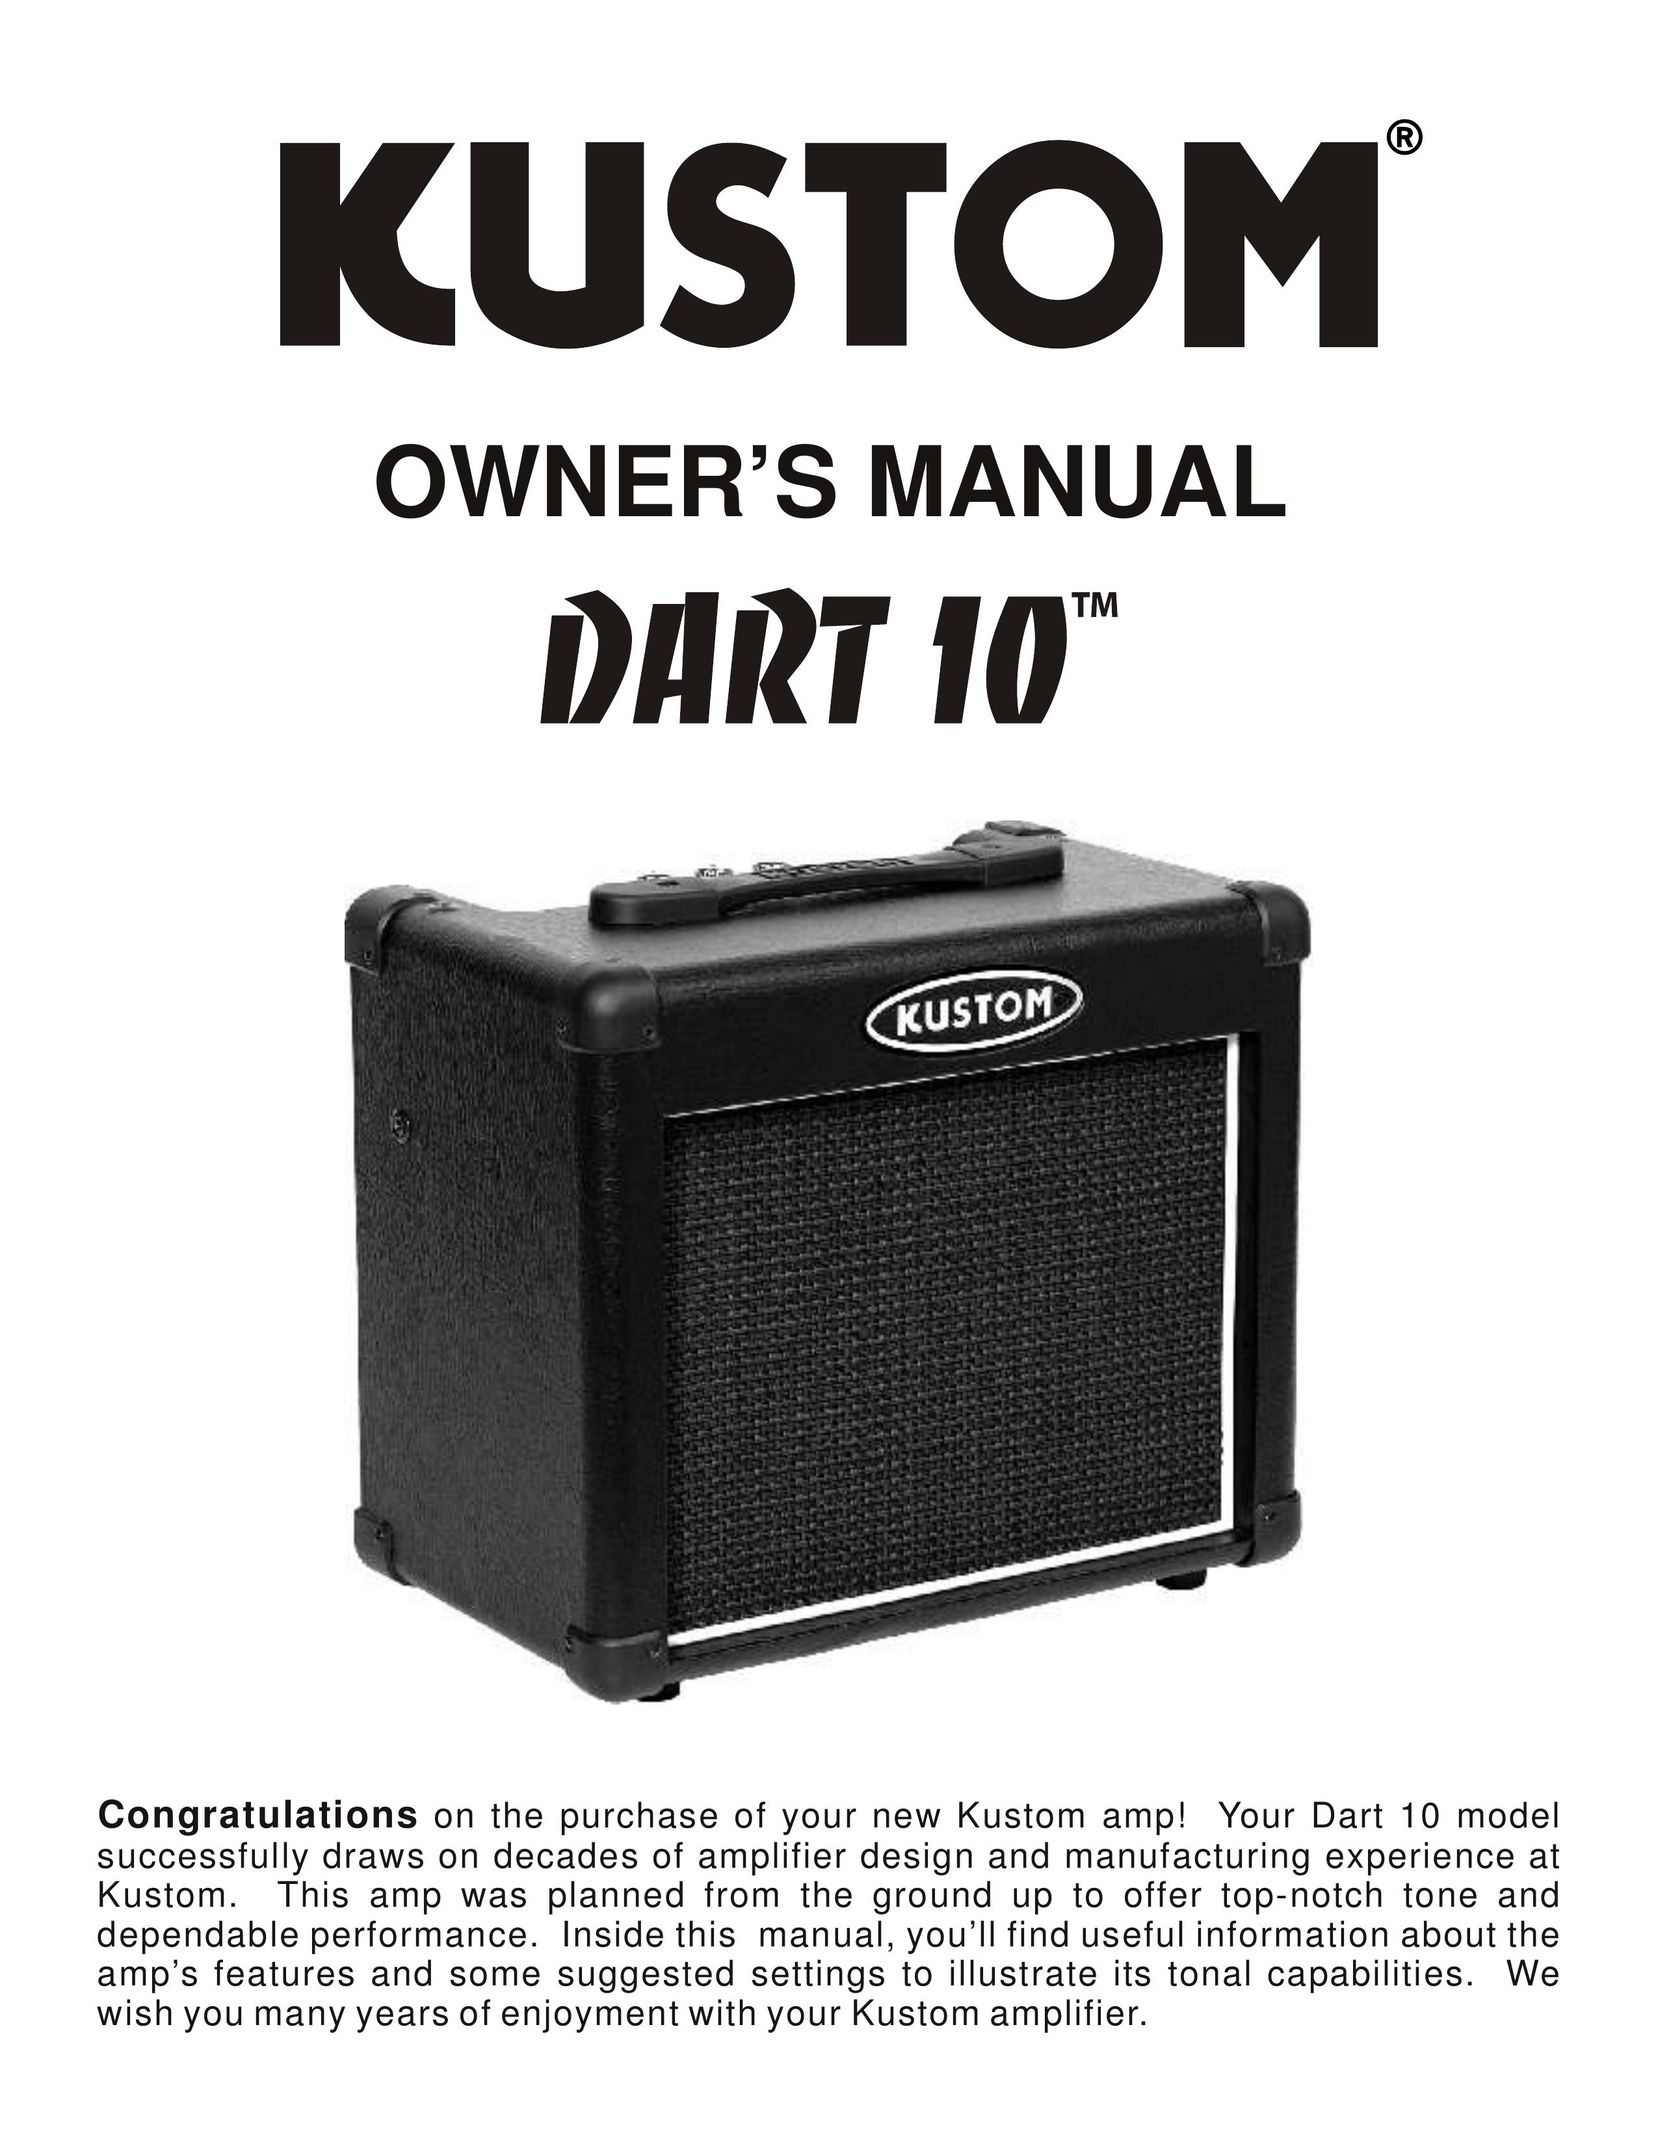 Kustom Dart 10 Stereo Amplifier User Manual